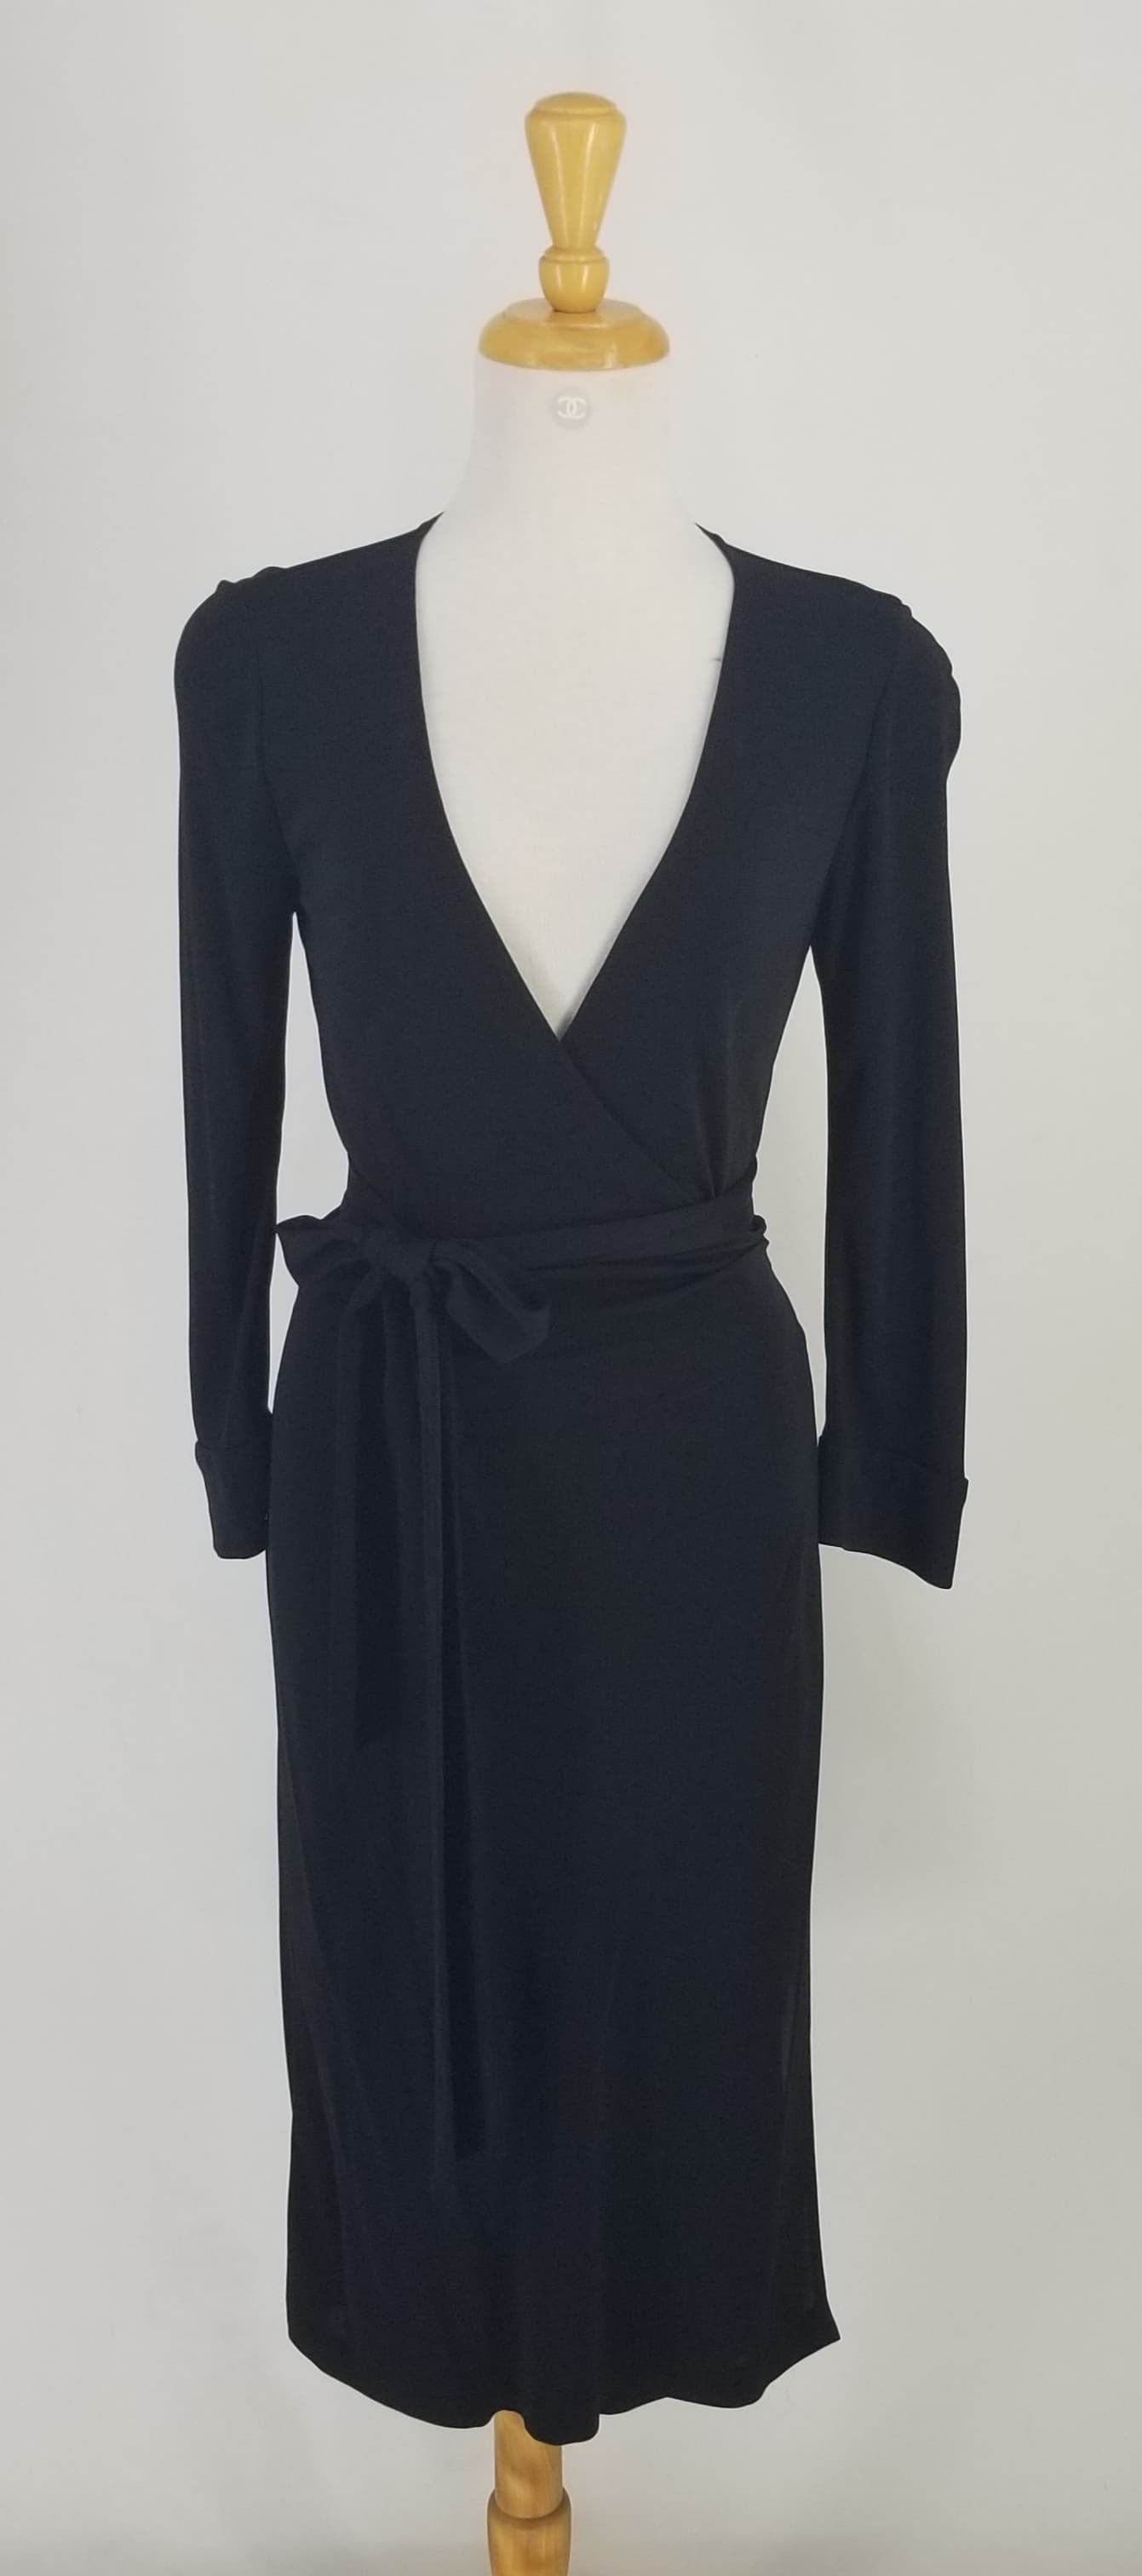 Authentic Diane Von Furstenberg Black Wrap Dress Sz 6